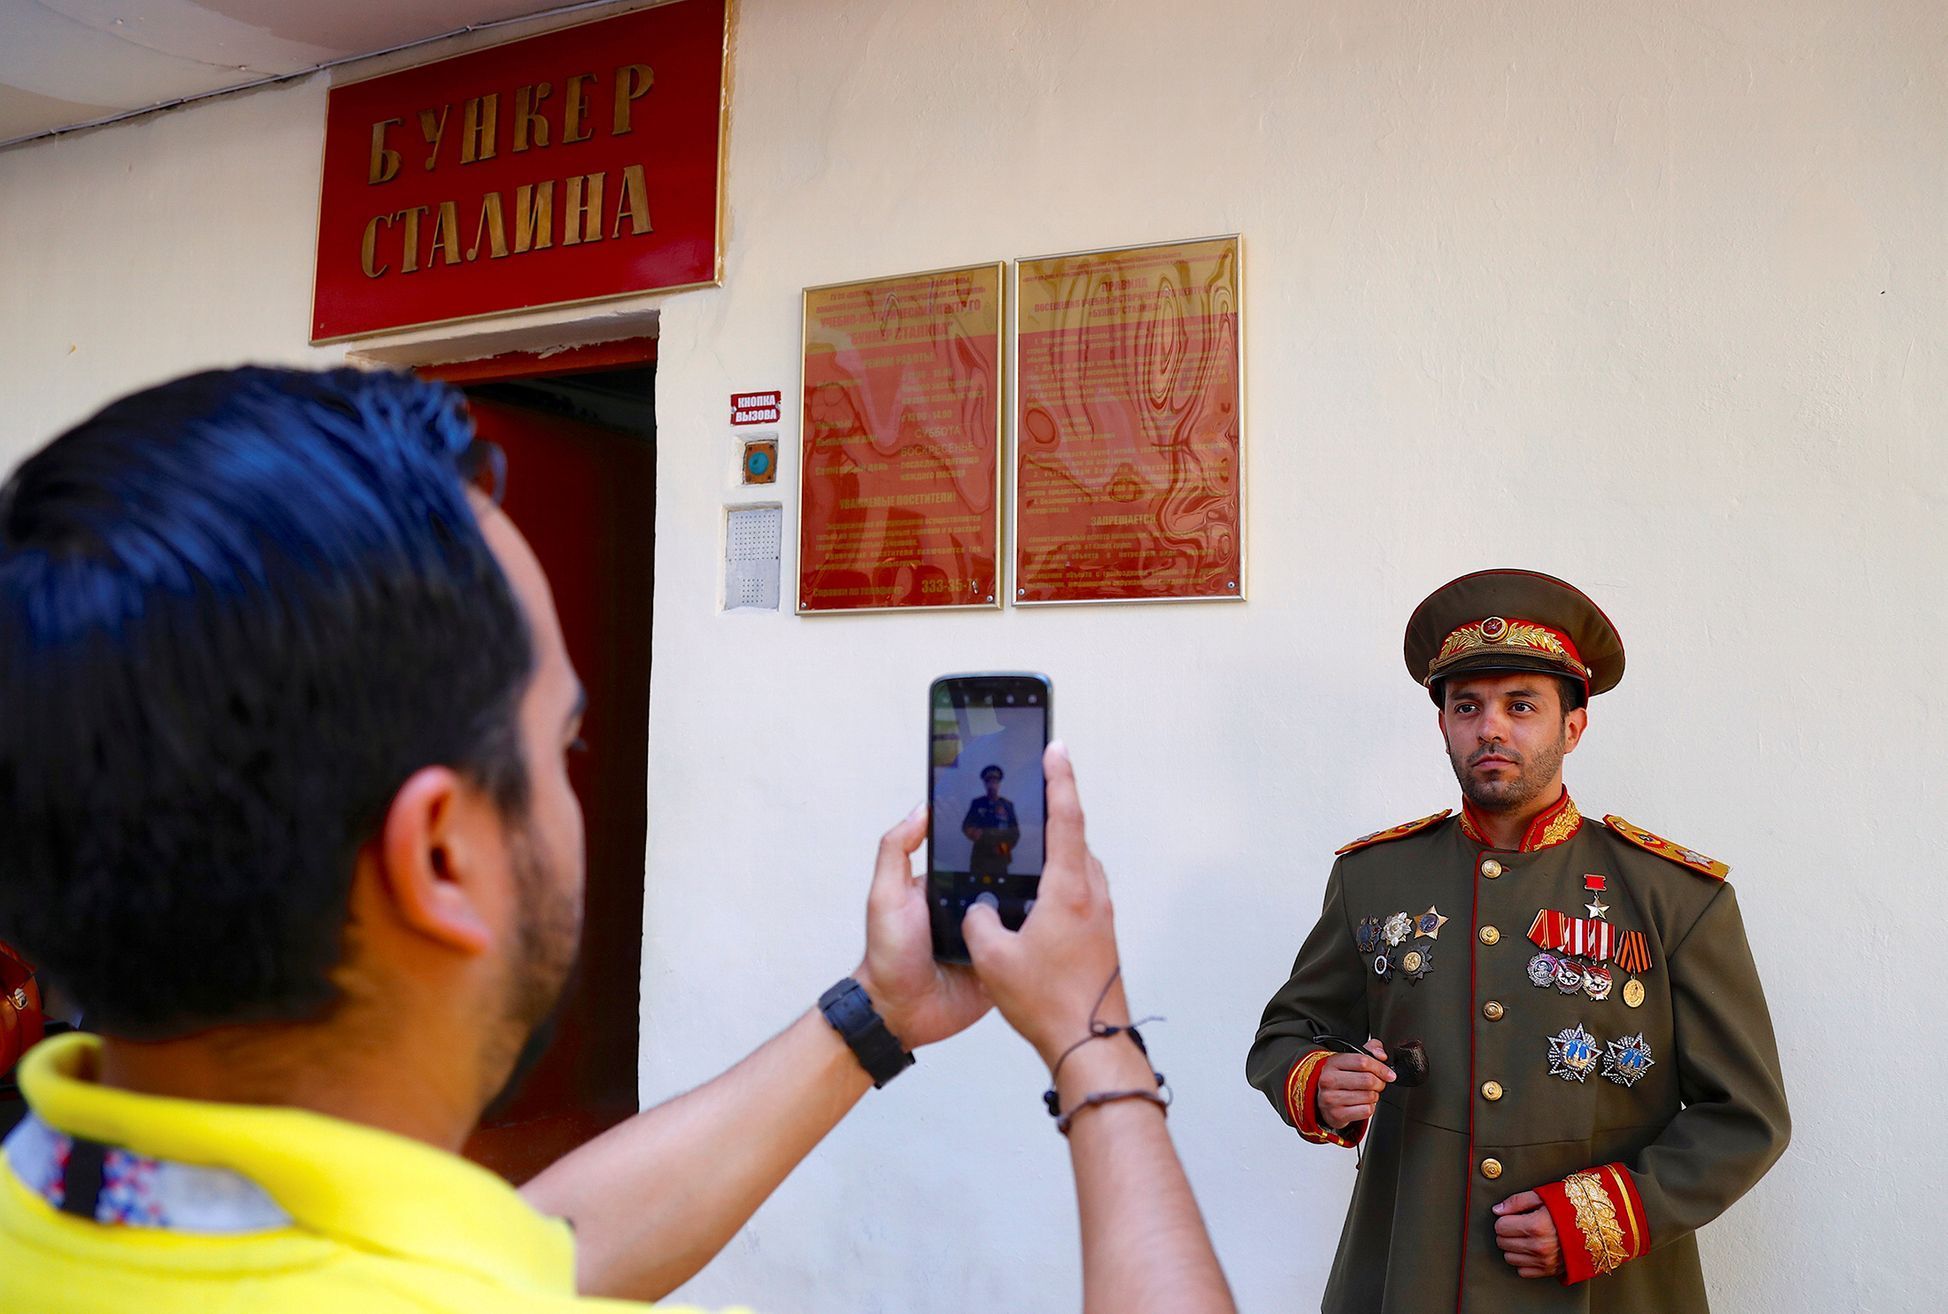 Fotogalerie / Stalinův bunkr / Reuters / 3